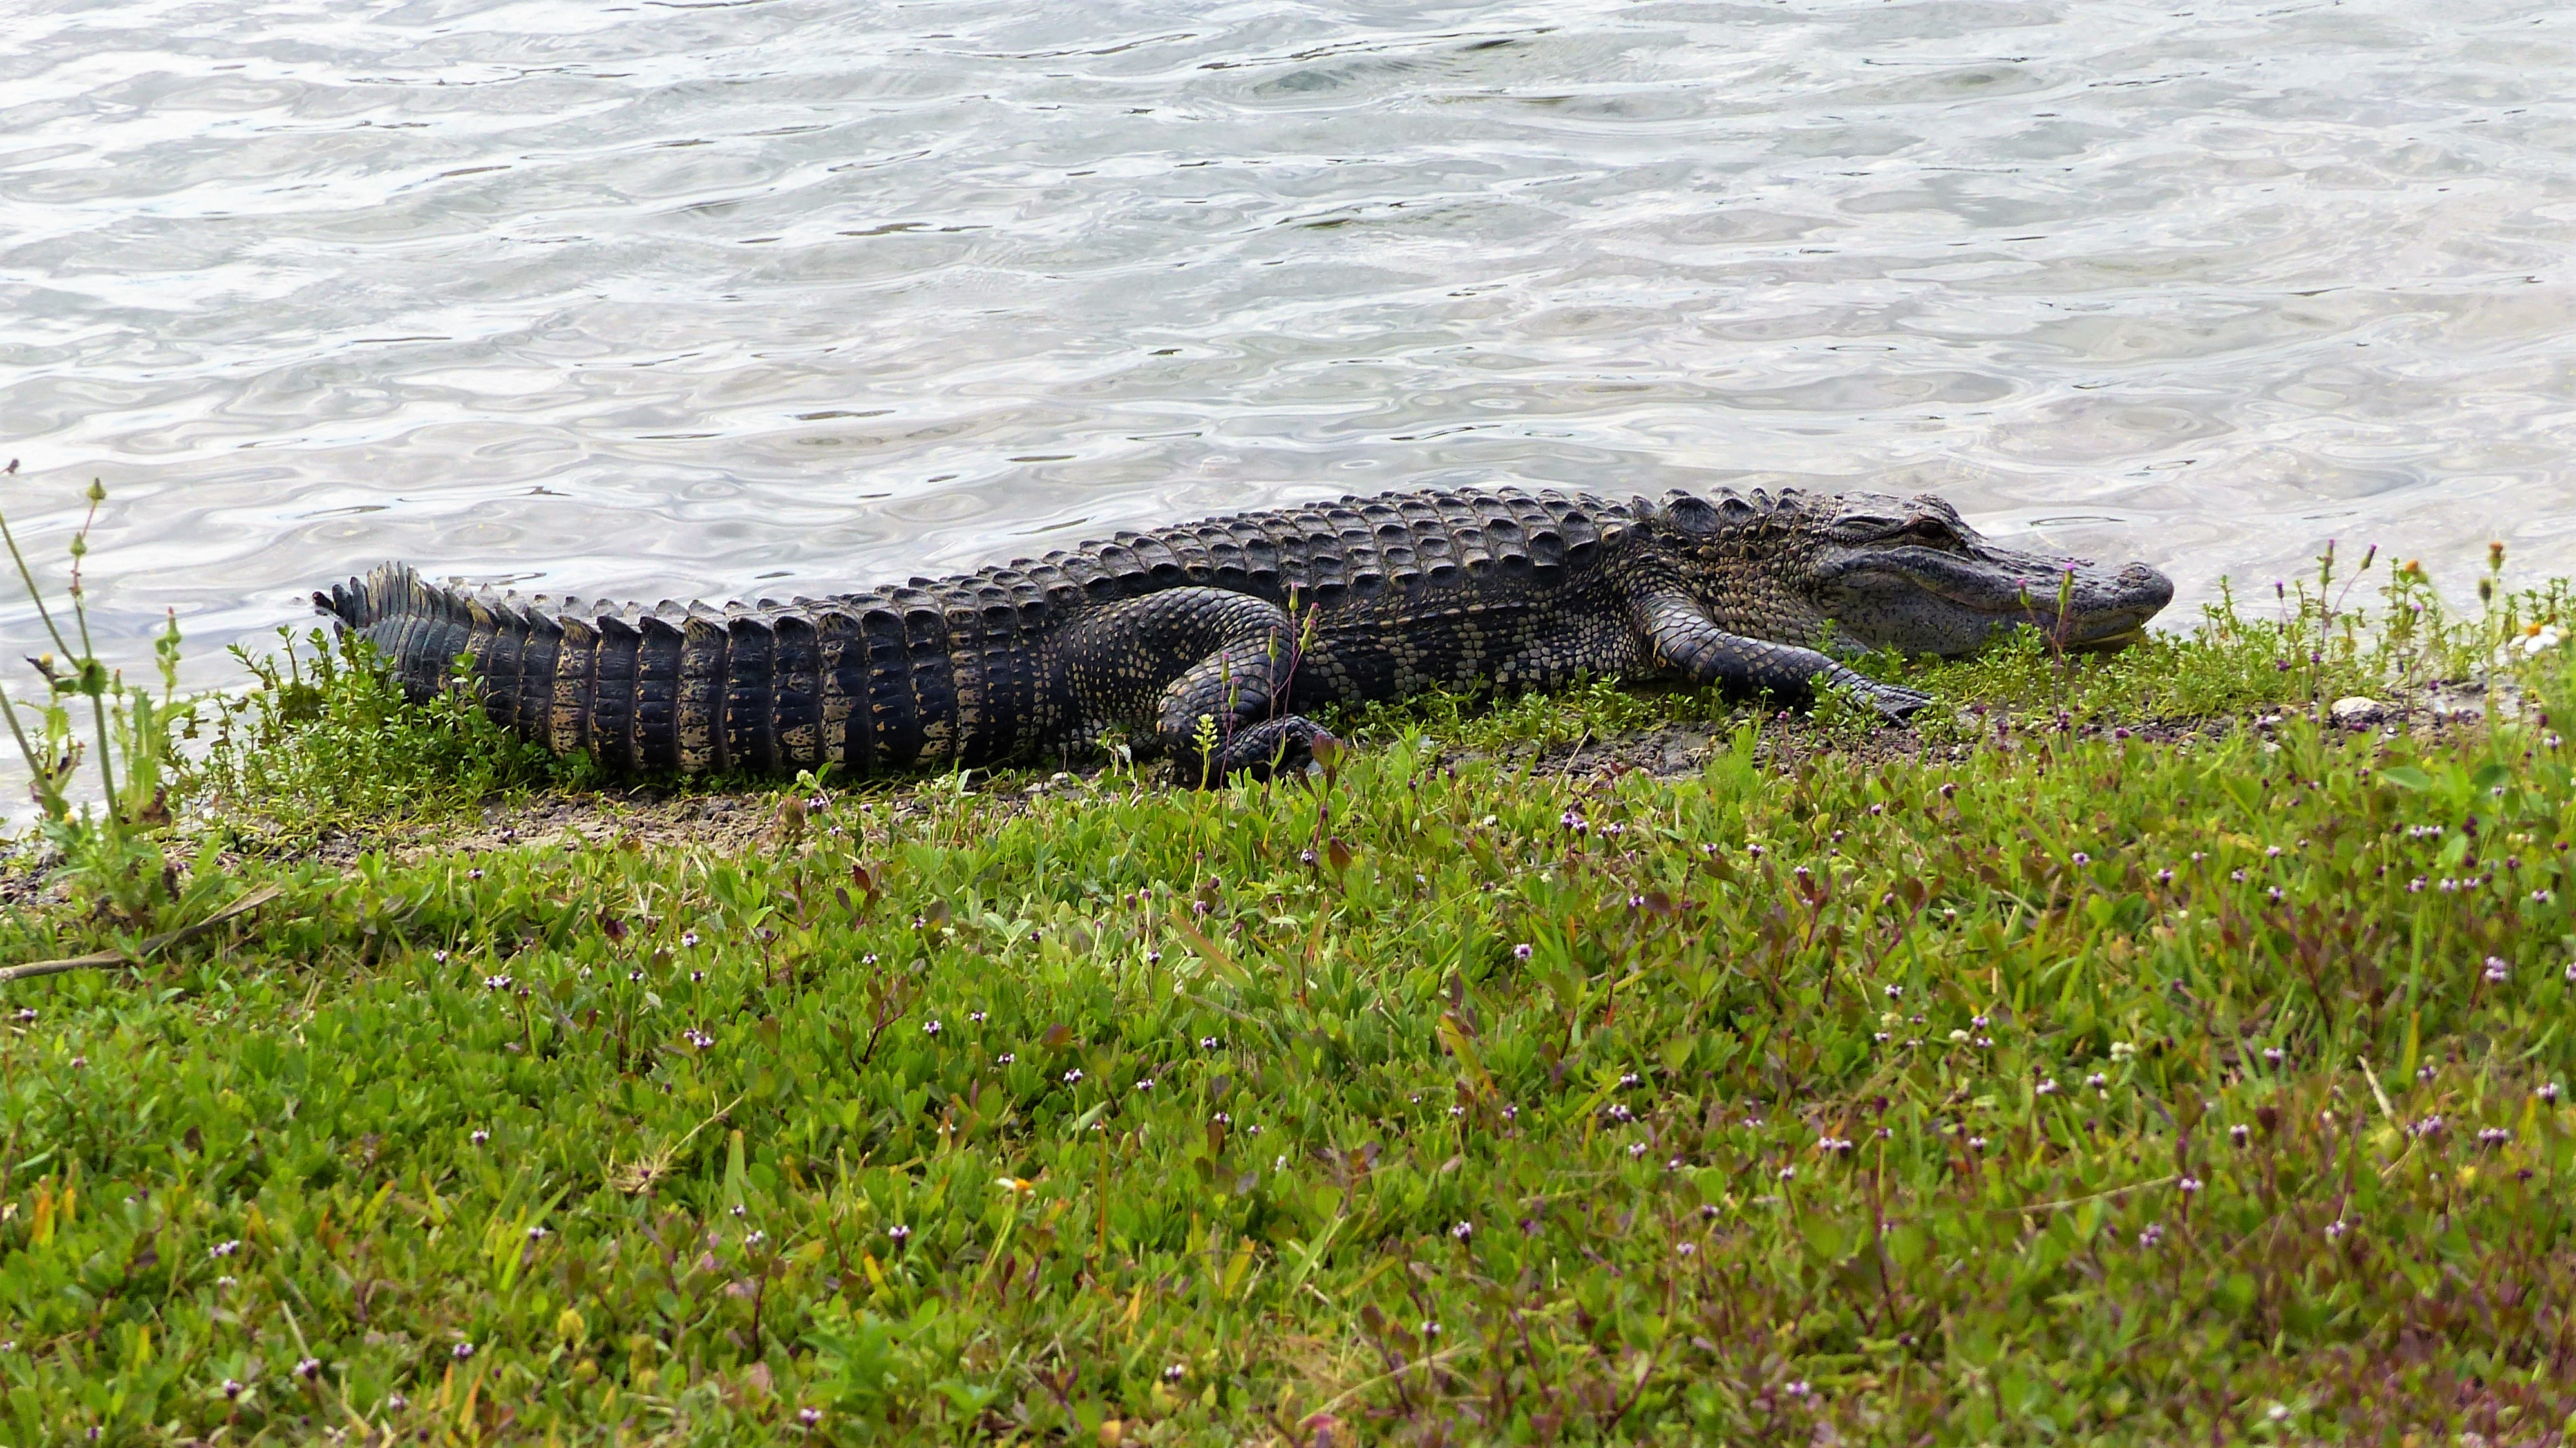 Florida’s statewide alligator harvest begins Aug. 15